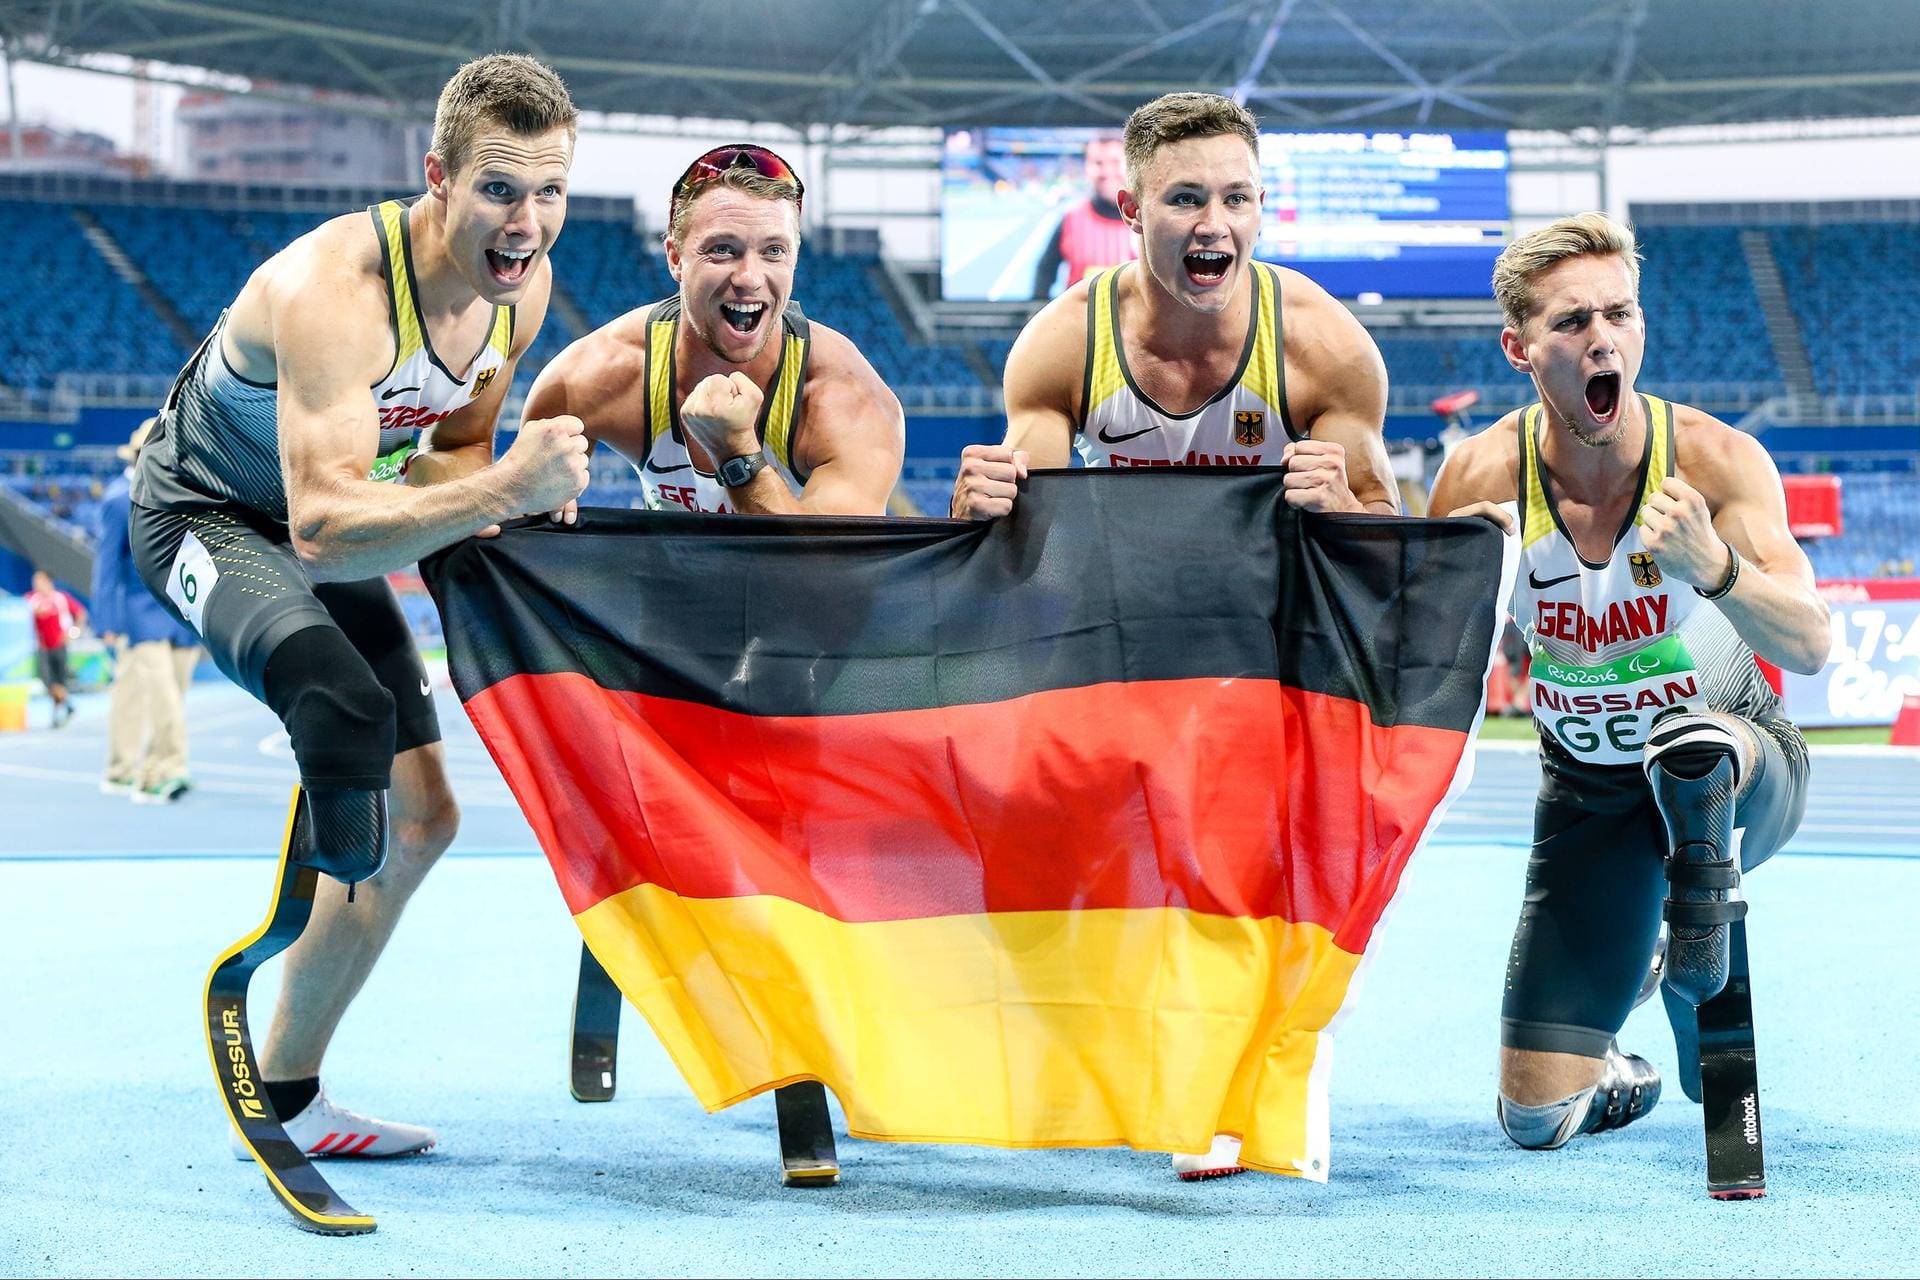 Die deutsche 4x100m-Staffel gewann in Rio 2016 Gold. Seit den ersten Paralympics 1960 in Rom haben deutsche Parasportler zahlreiche Medaillen gewonnen. In der Fotoshow sehen Sie einige der Erfolgreichsten.